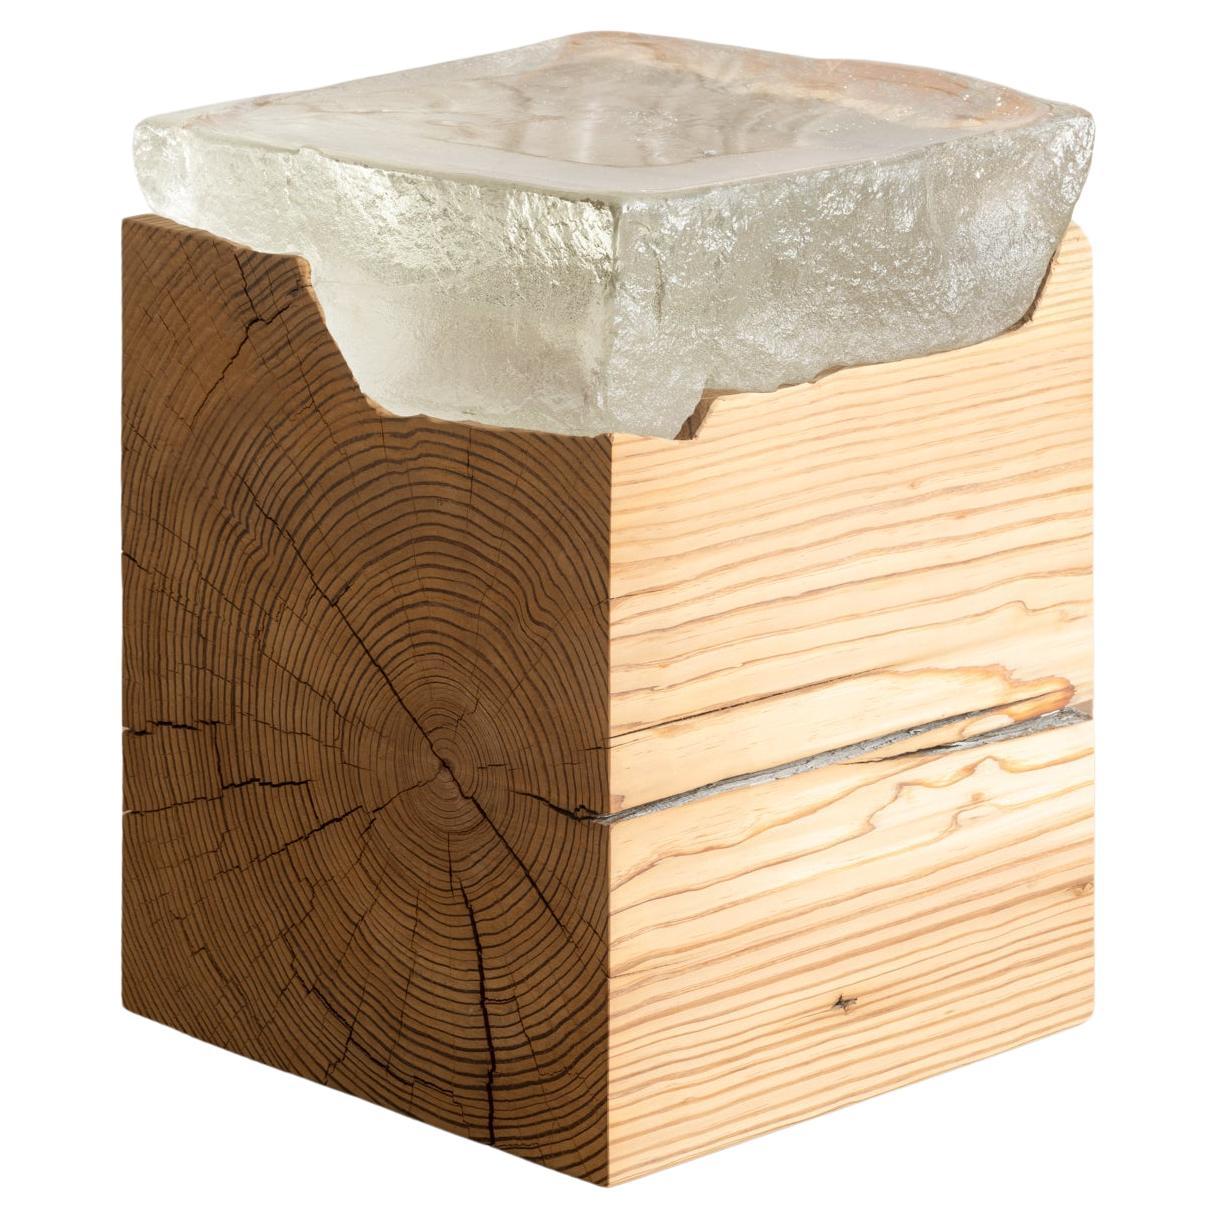 Table d'appoint ou d'extrémité avec plateau en verre coulé sur bloc de bois récupéré sculpté à la main